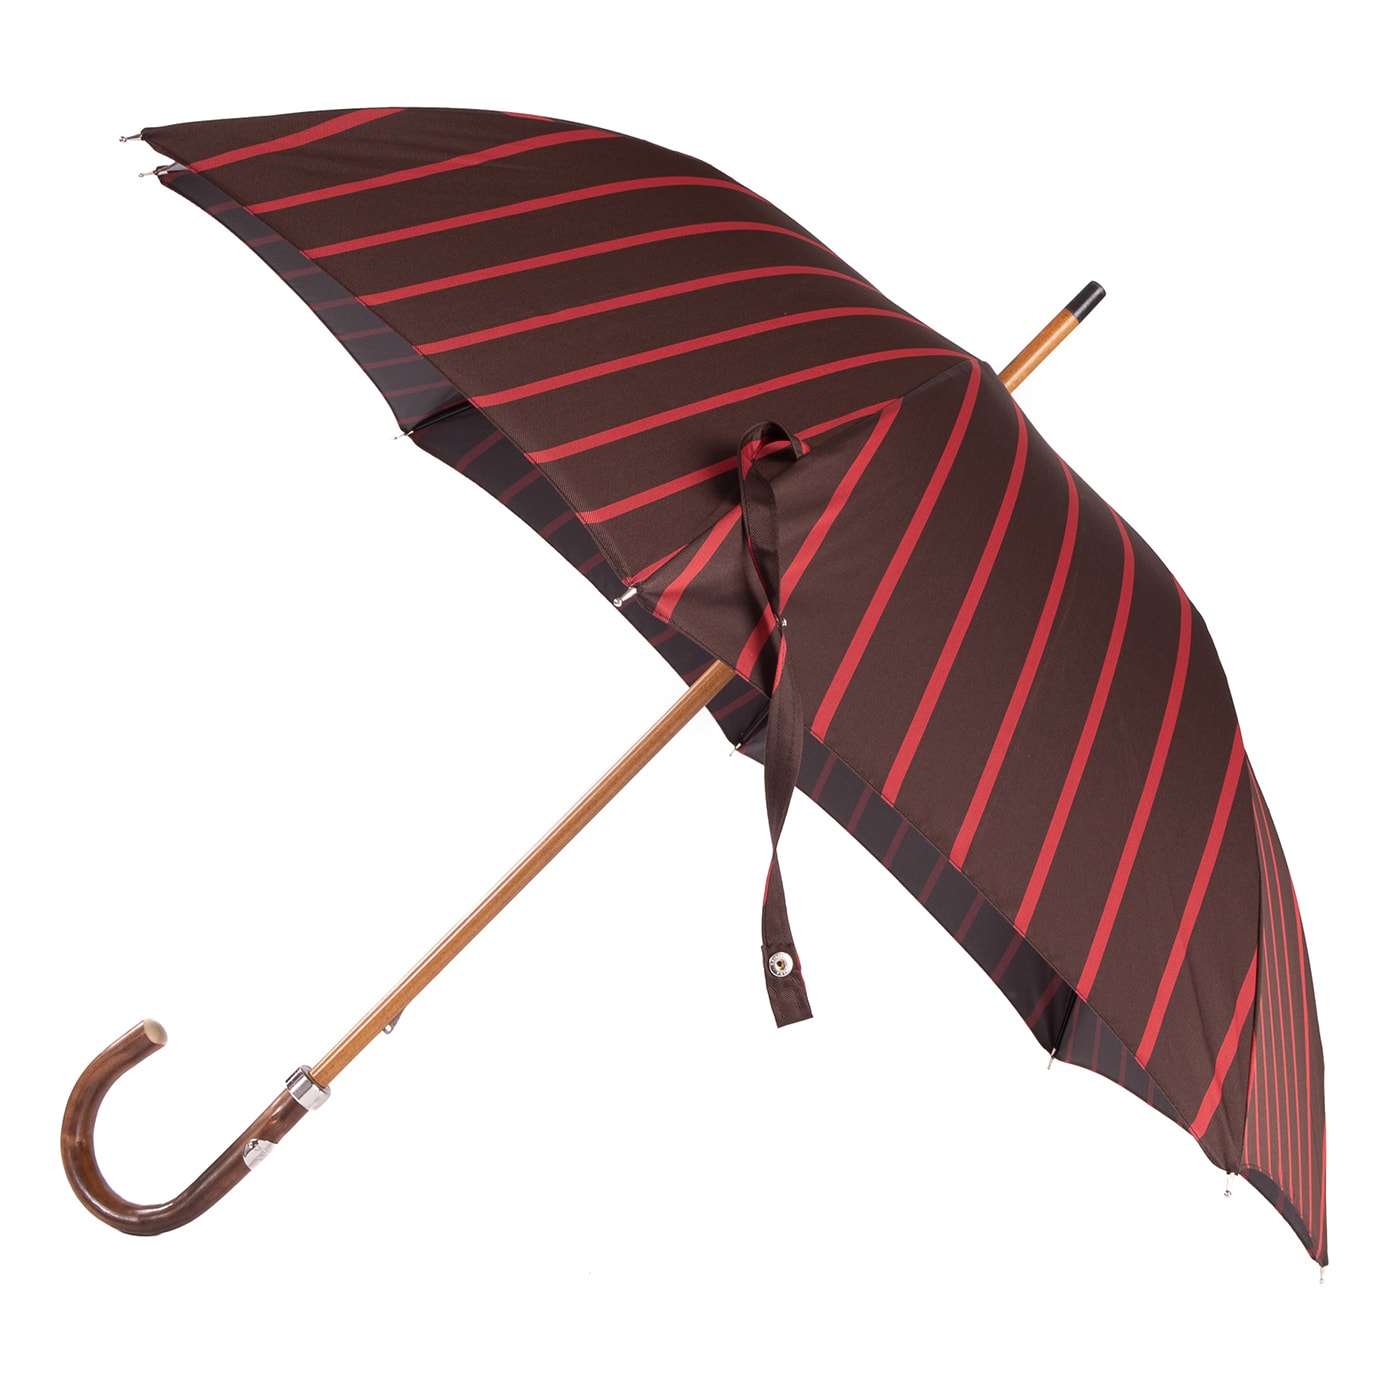 Fit-Up Regimental Red and Brown Umbrella - Francesco Maglia Milano